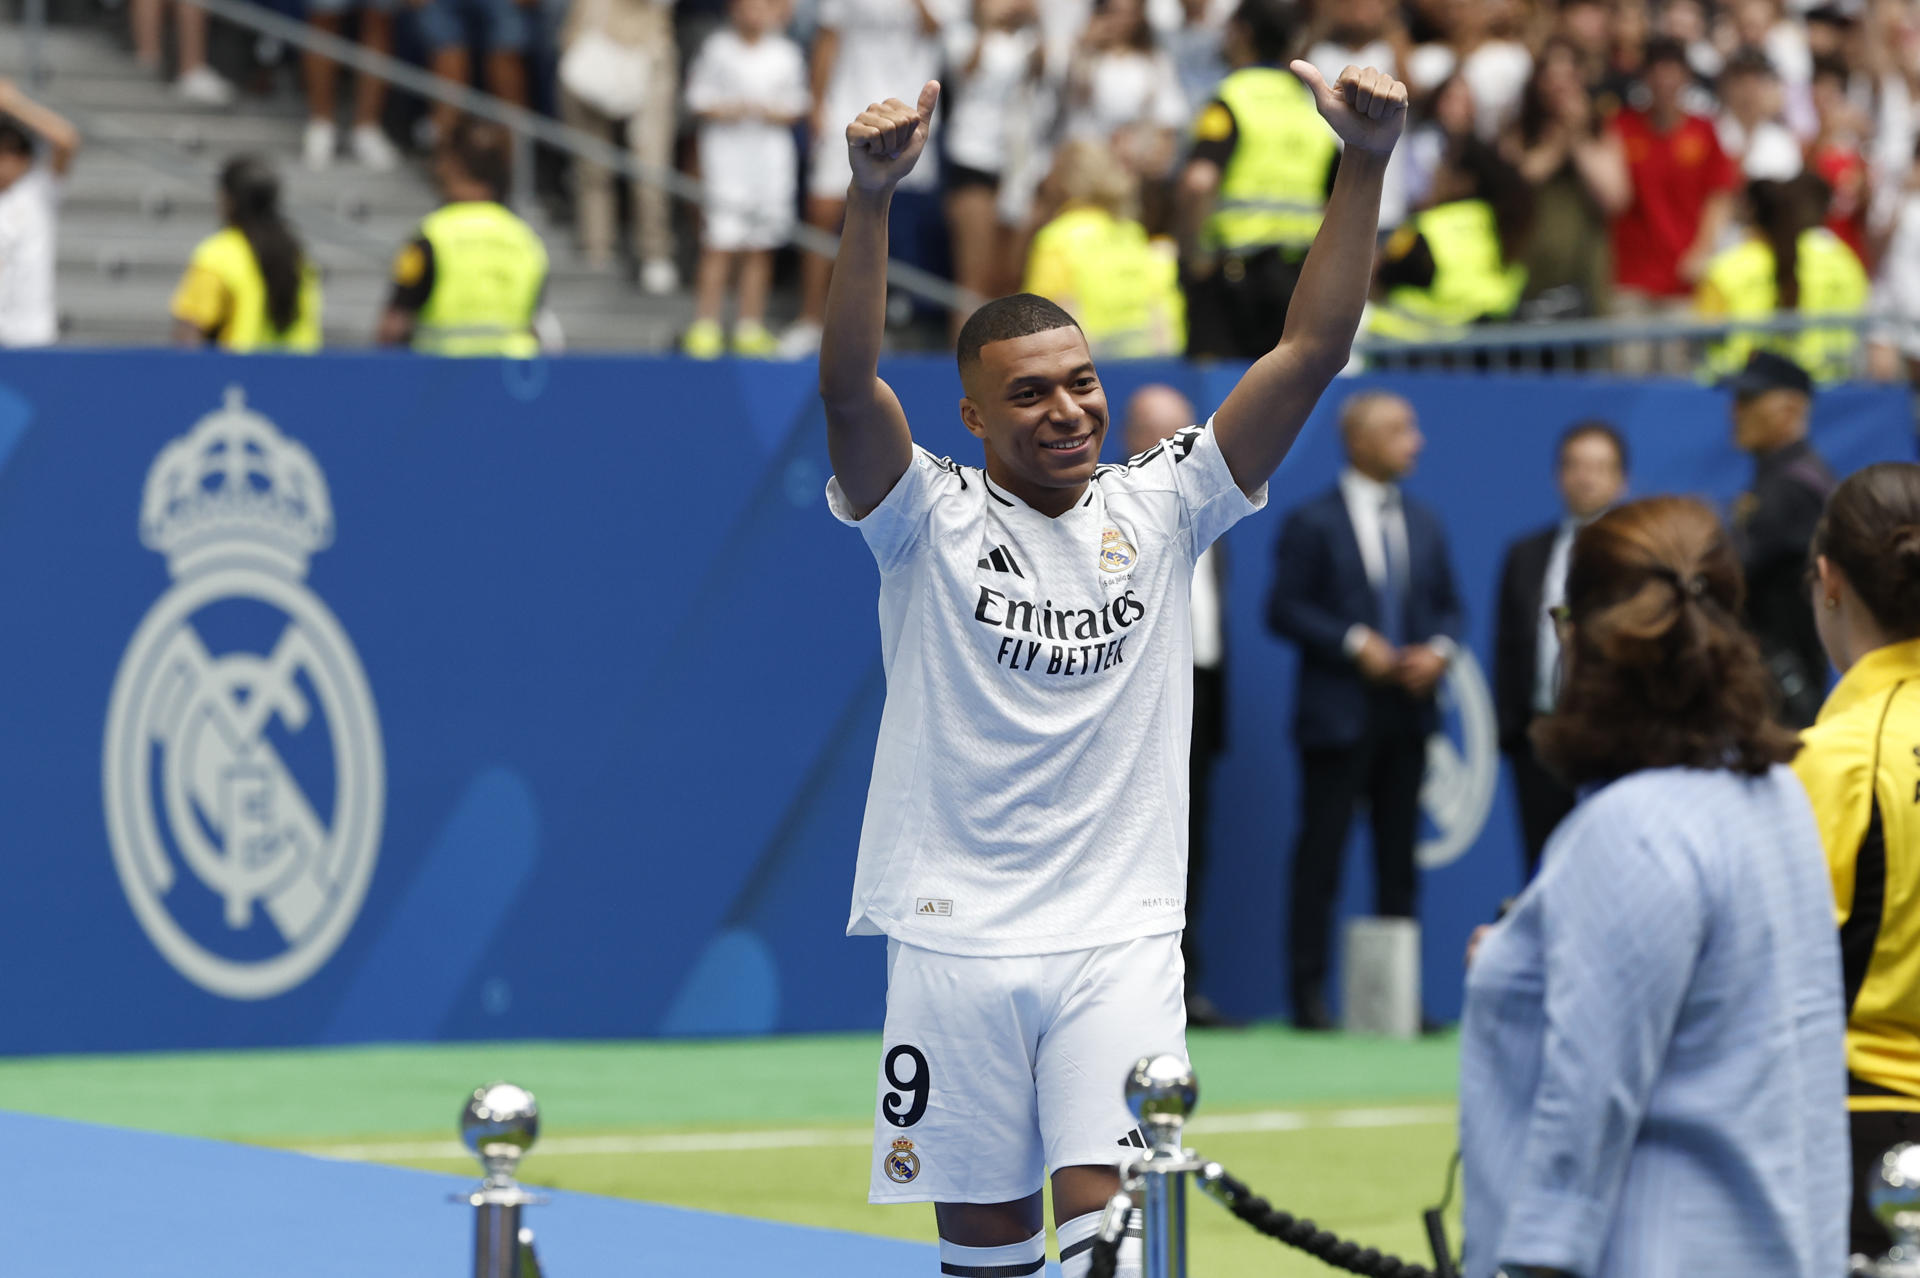 Presentación del francés Kylian Mbappé como nuevo jugador del Real Madrid. EFE/Chema Moya